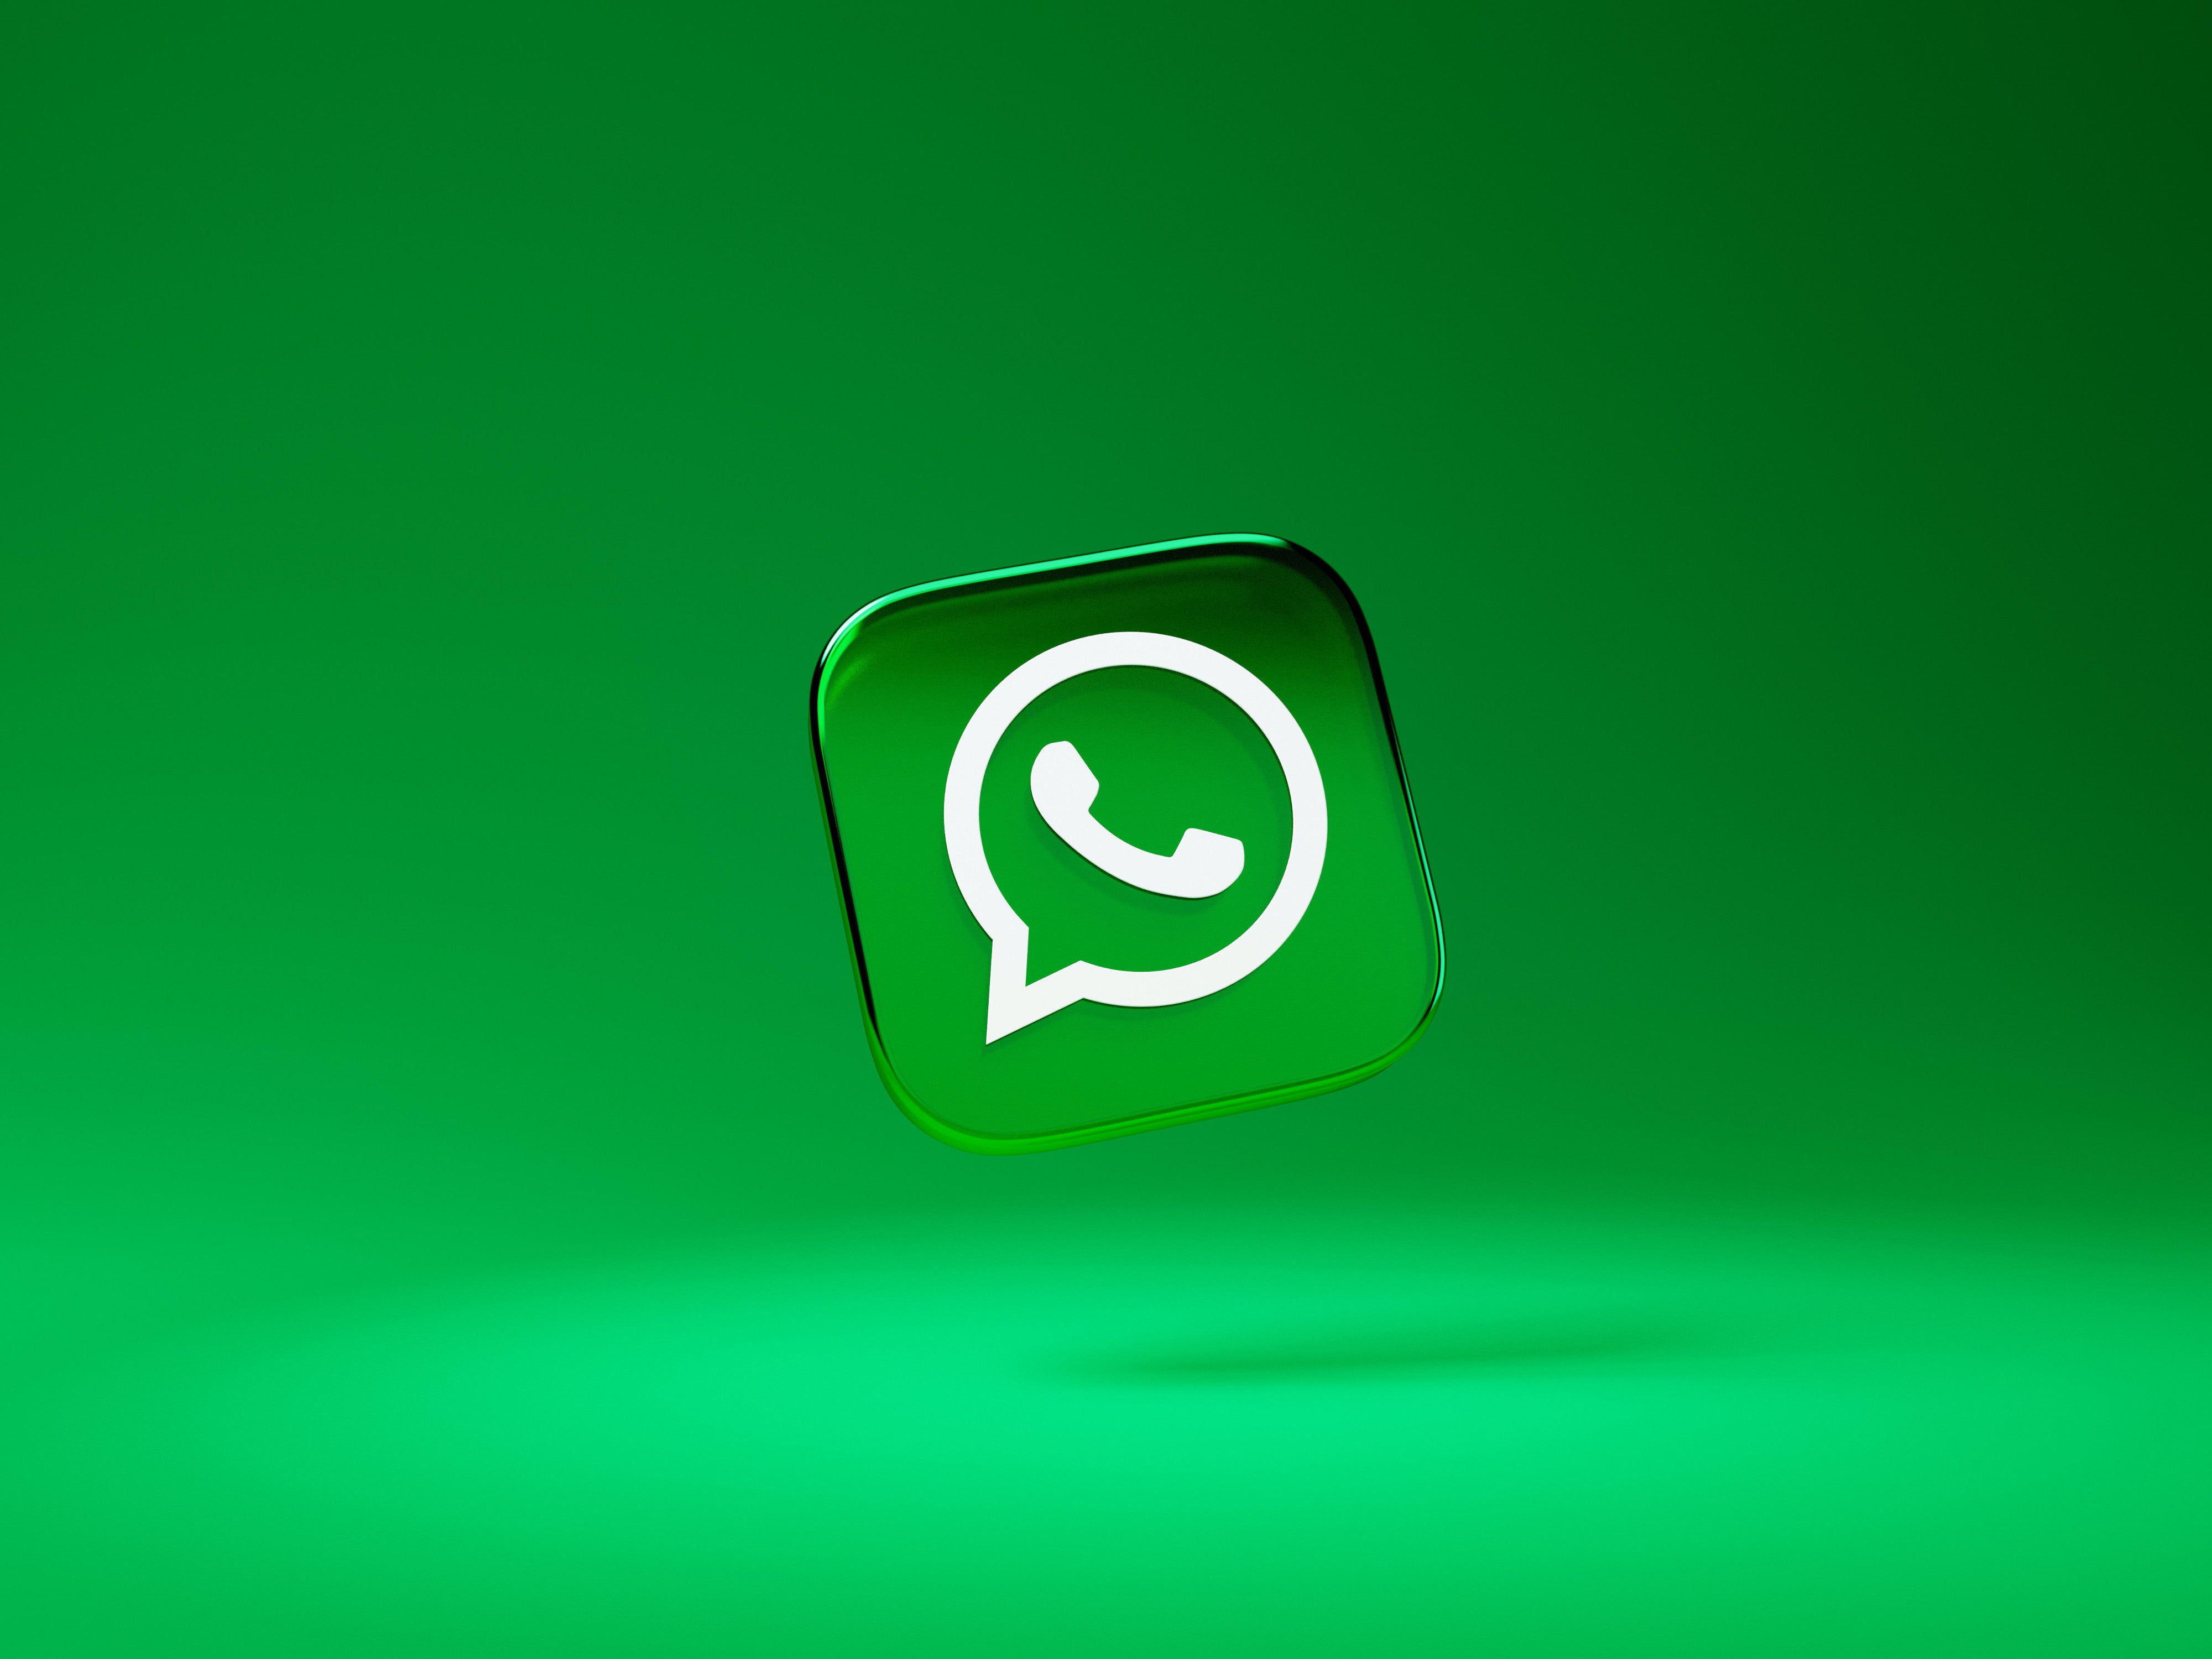 #WhatsApp-Kanal erstellen: Mit wenigen Klicks zum eigenen Kanal